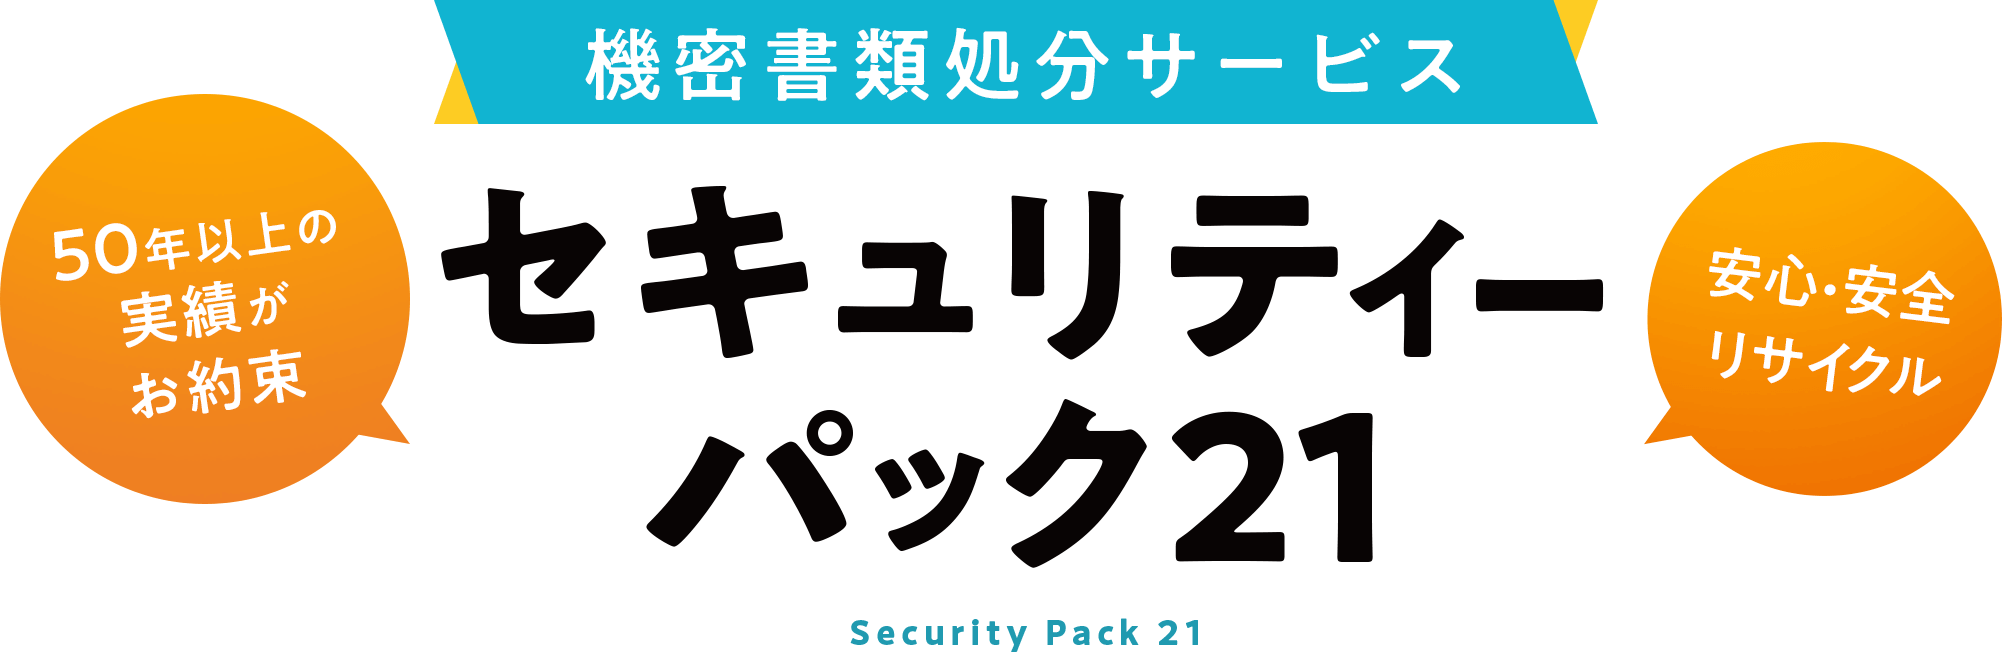 1箱からの個人向け書類処分サービス セキュリティパック21